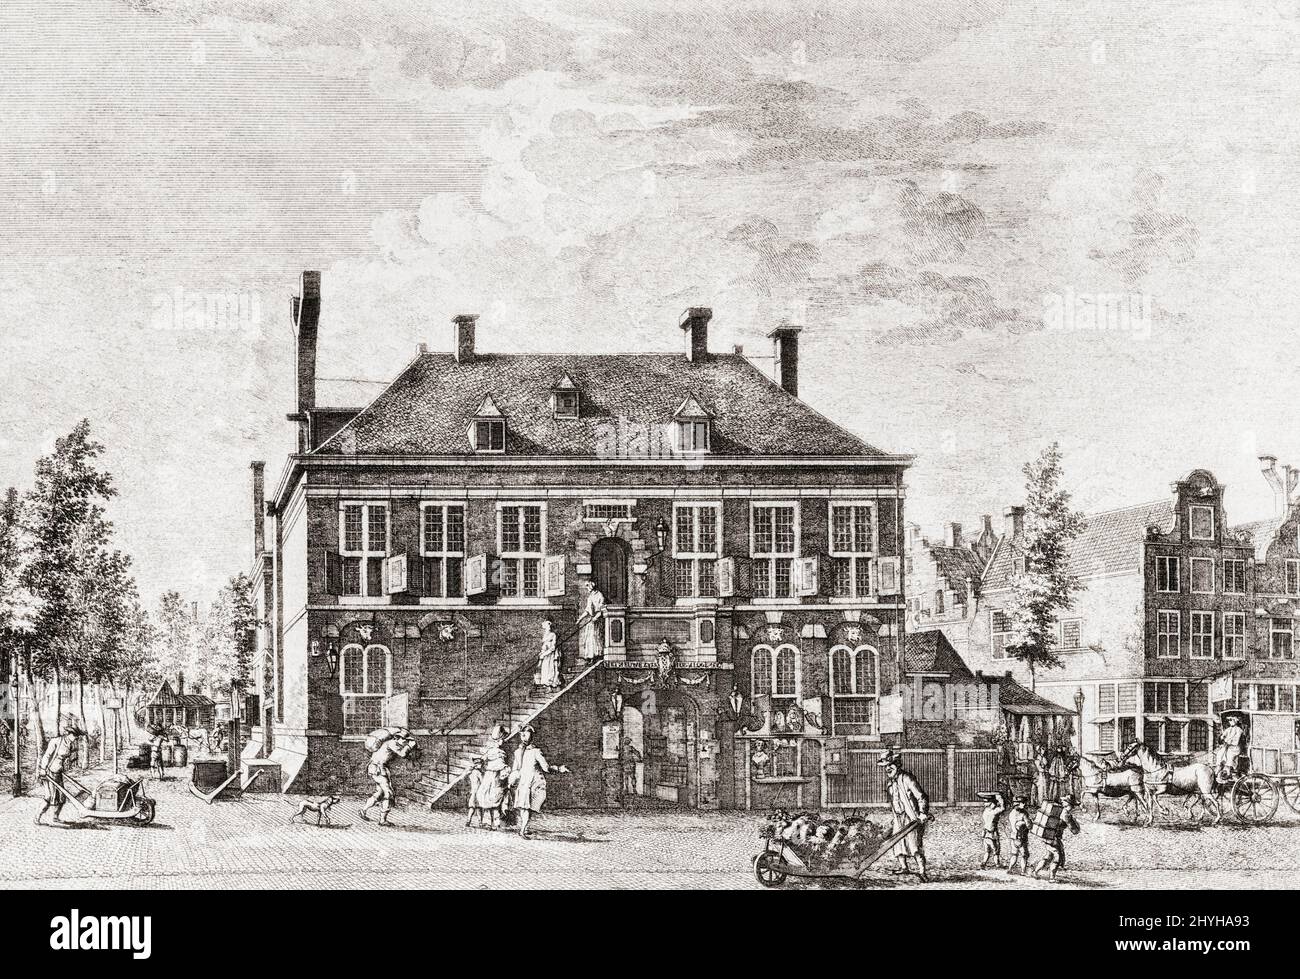 The Dutch West India Company's House on Haarlemmer Straat, Amsterdam, Niederlande, 1623 - 1647. Nach einem Stich eines unbekannten Künstlers aus dem Jahr 1783. (Das Gebäude befindet sich tatsächlich am Herenmarkt.) Stockfoto